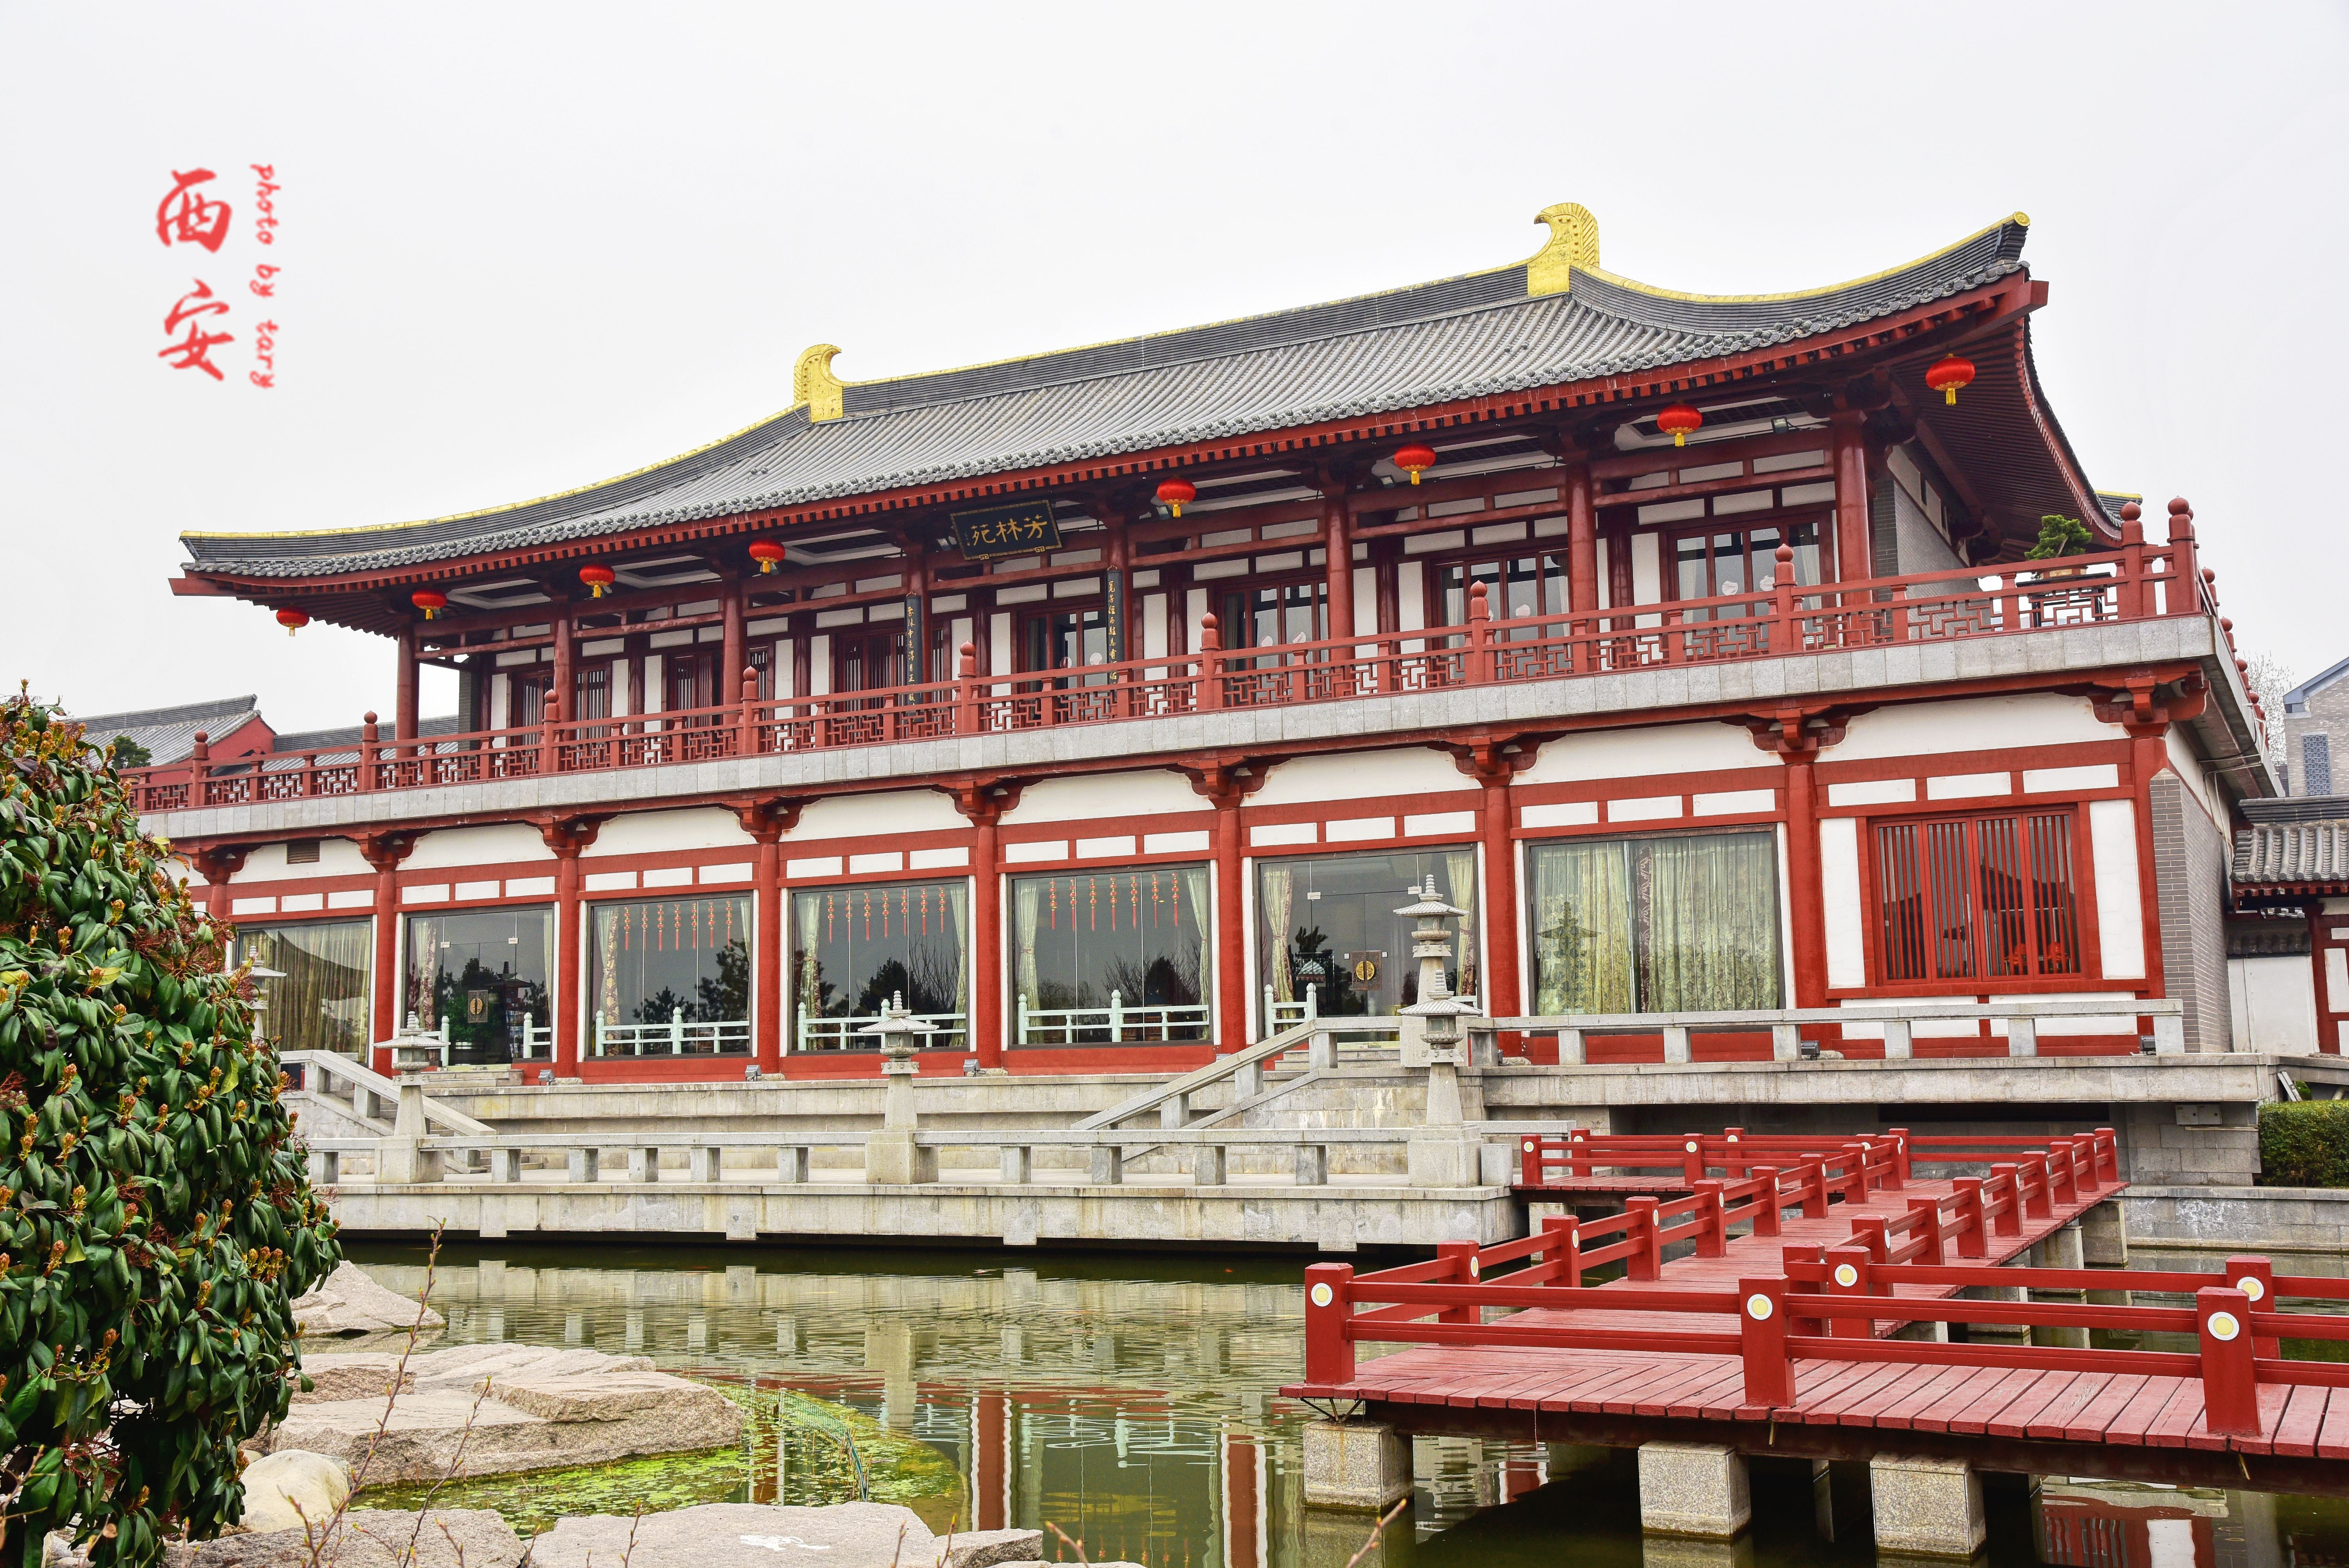 大唐芙蓉园位于西安市曲江新区,系在原唐代芙蓉园遗址上重建的国内首